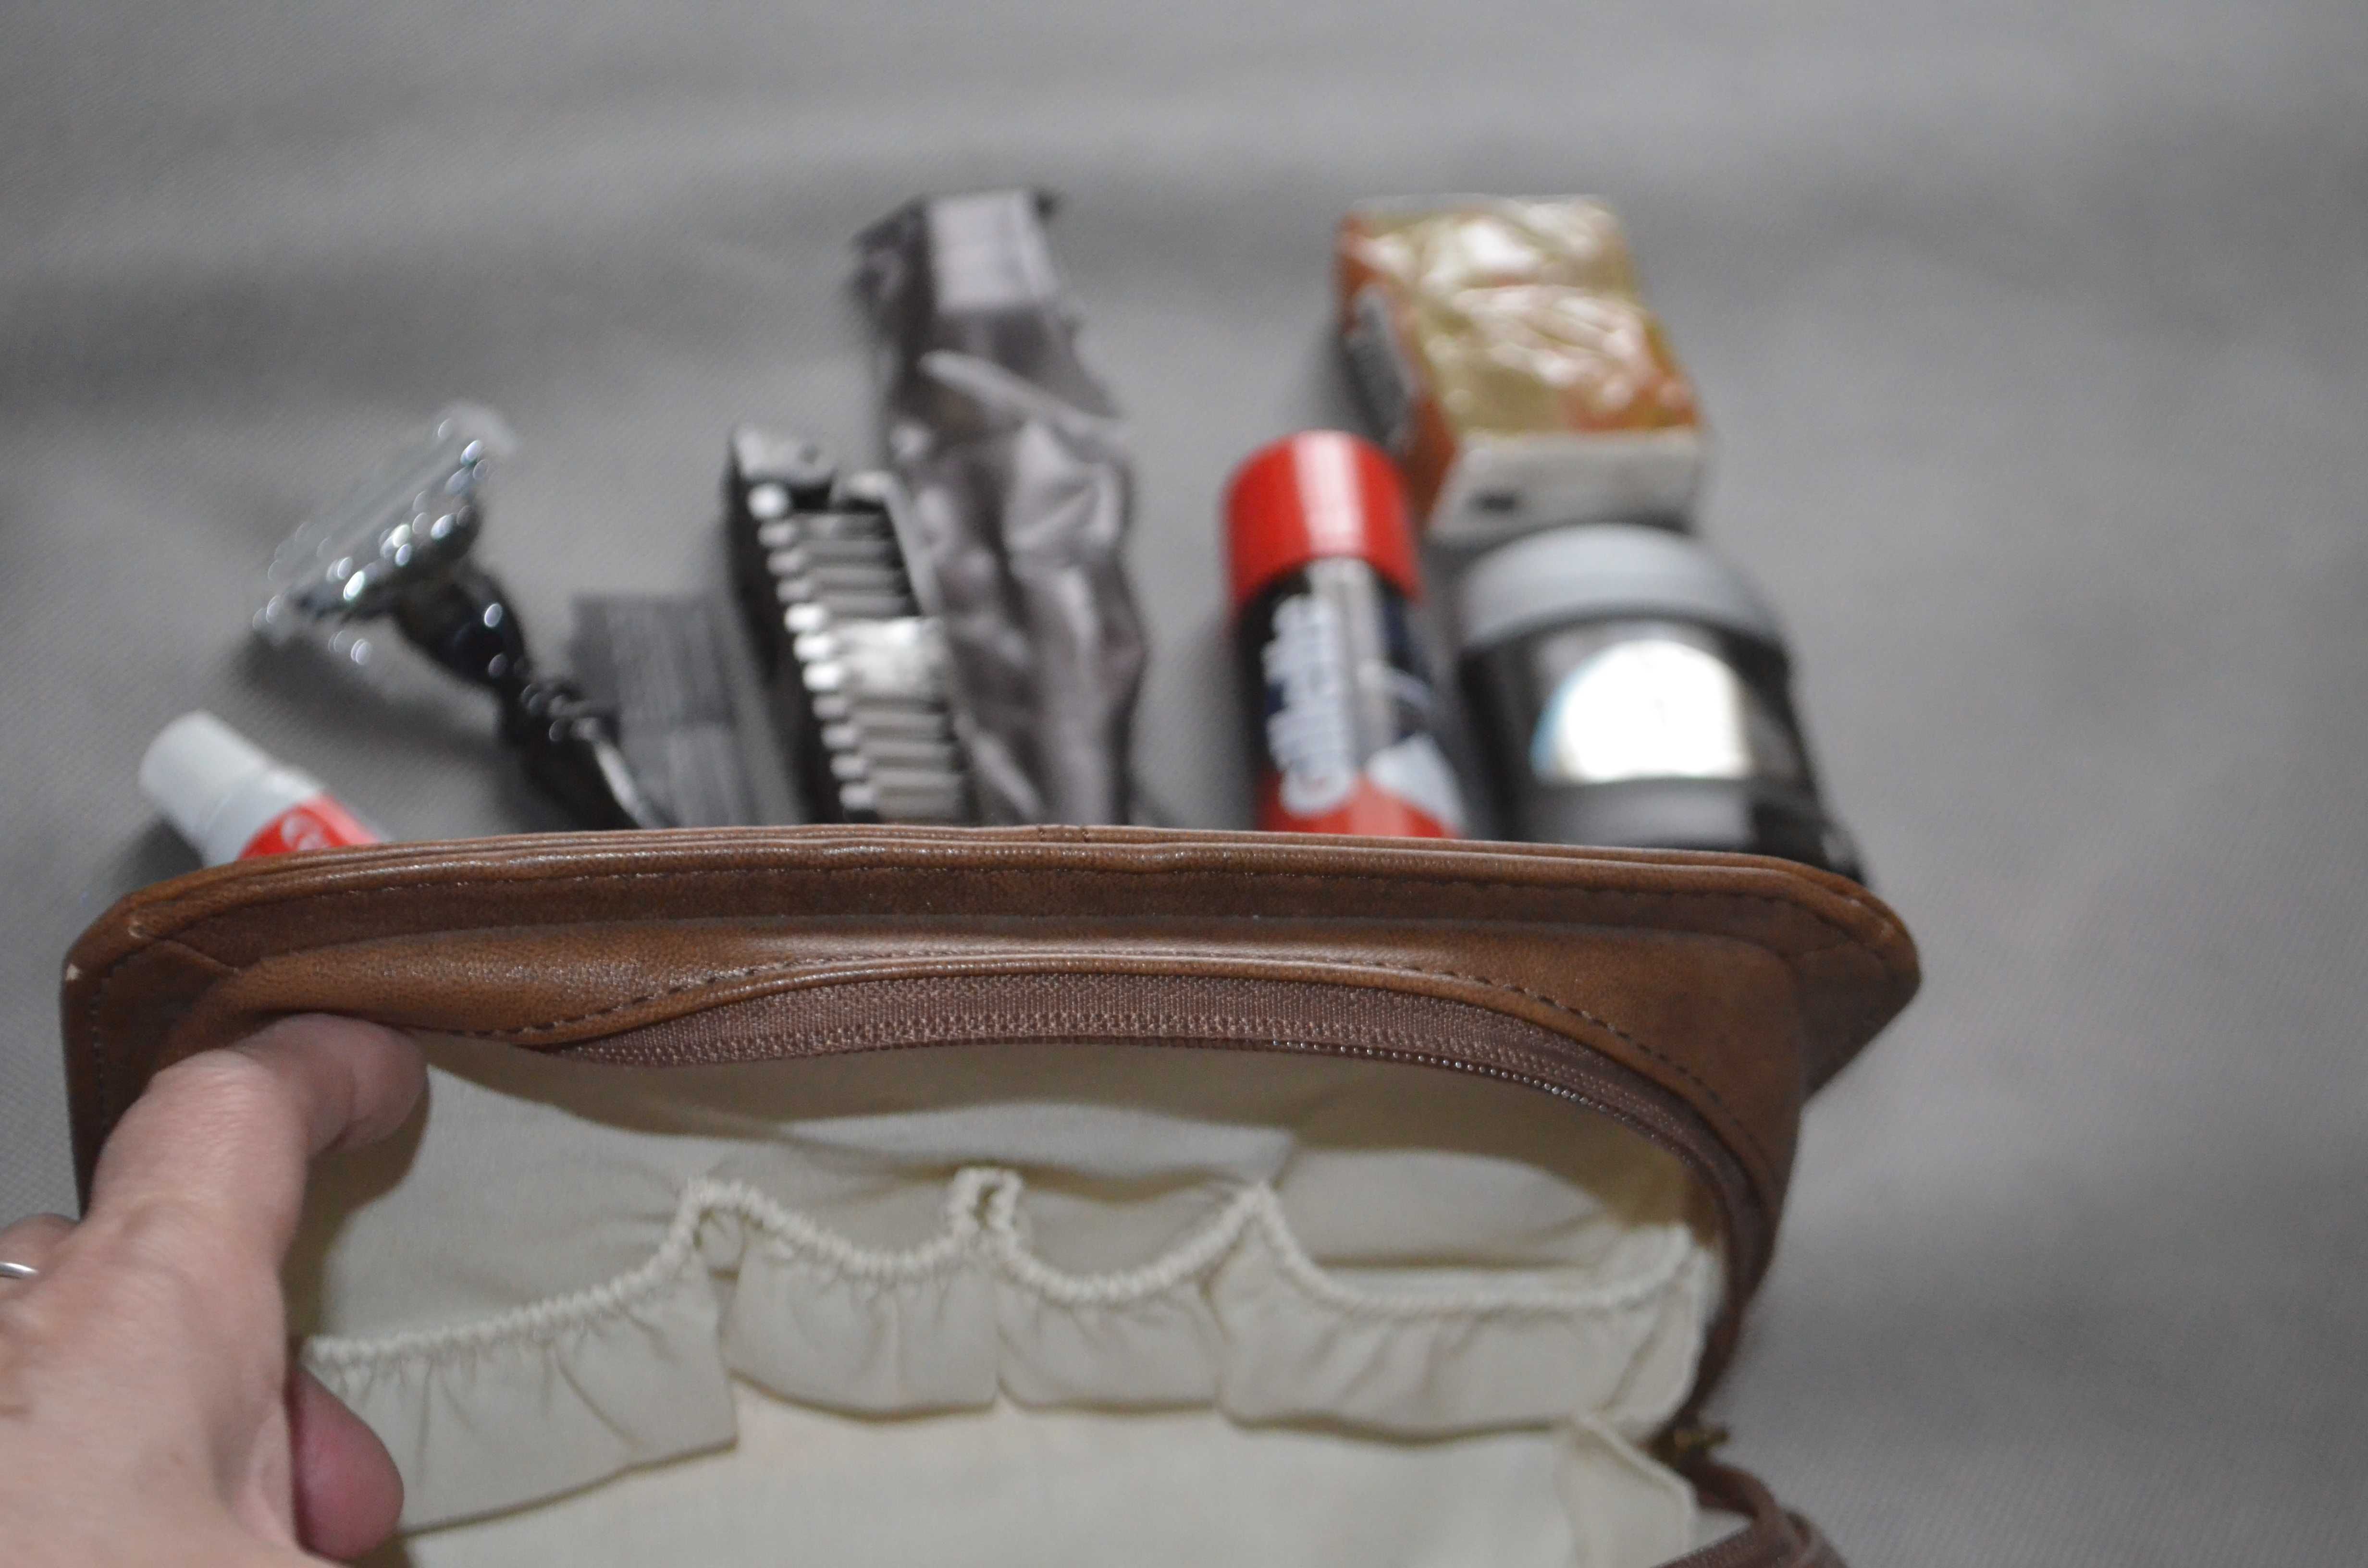 kosmetyczka męska z wyposażeniem kosmetyki zestaw podróżny Emirates